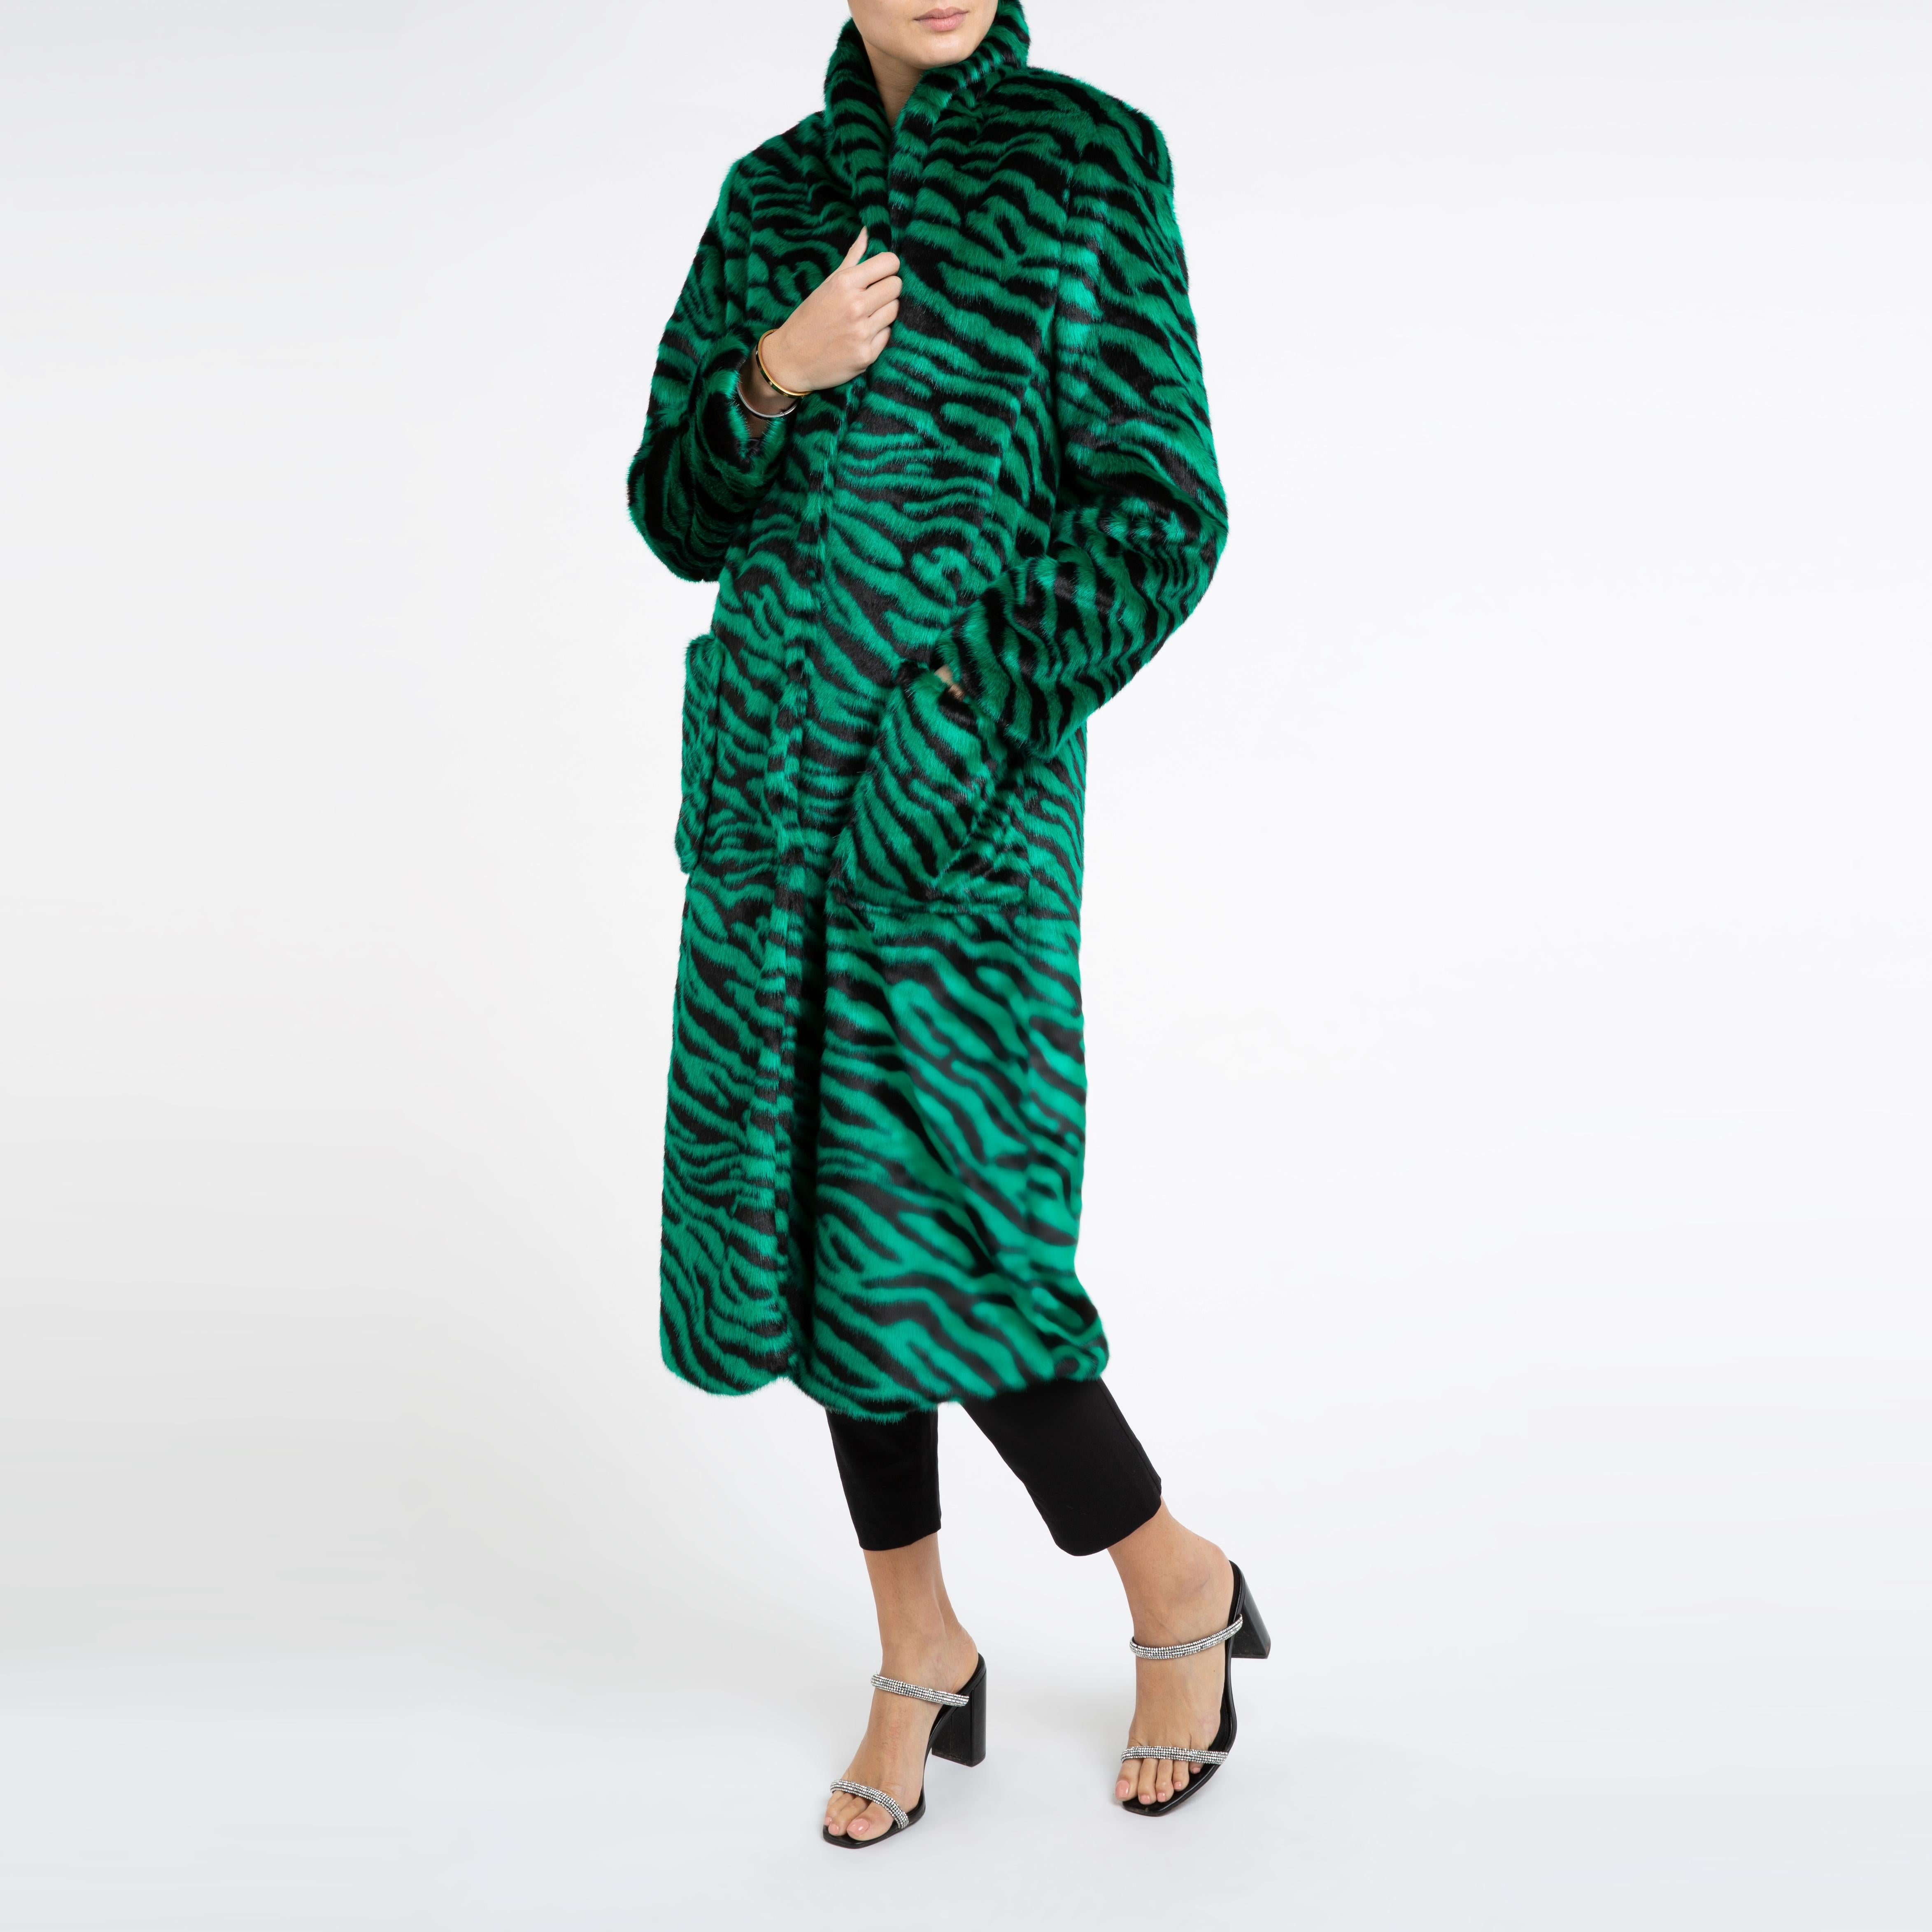 Verheyen London Esmeralda Faux Fur Coat in Emerald Green Zebra Print size uk 10 For Sale 4